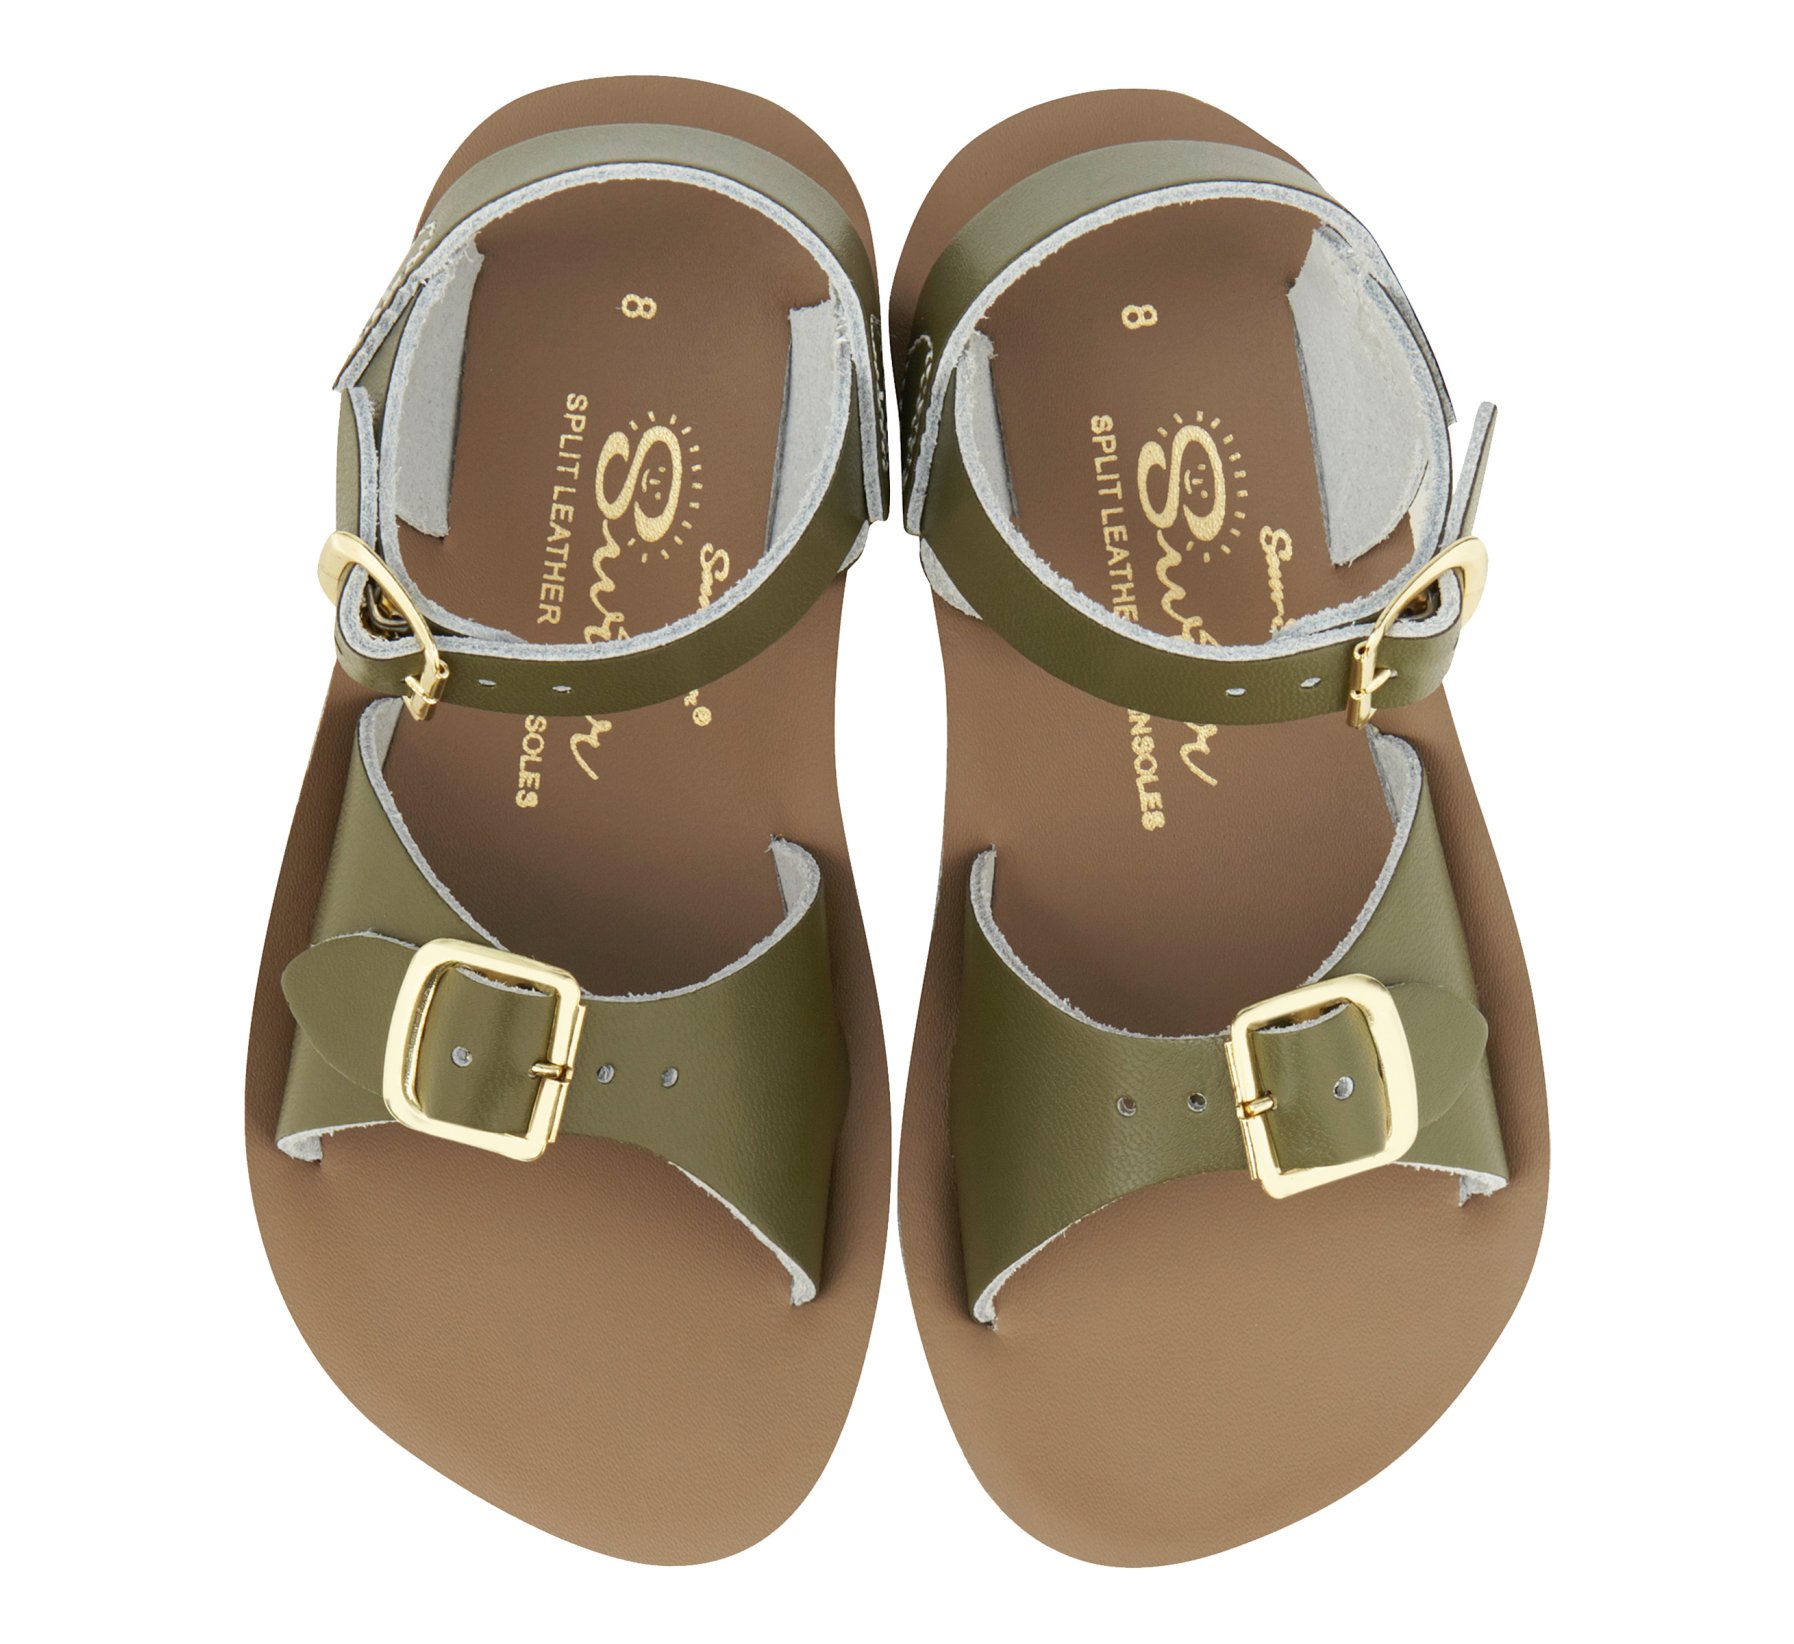 Surfer Olive Kids Sandals - Salt Water Sandals